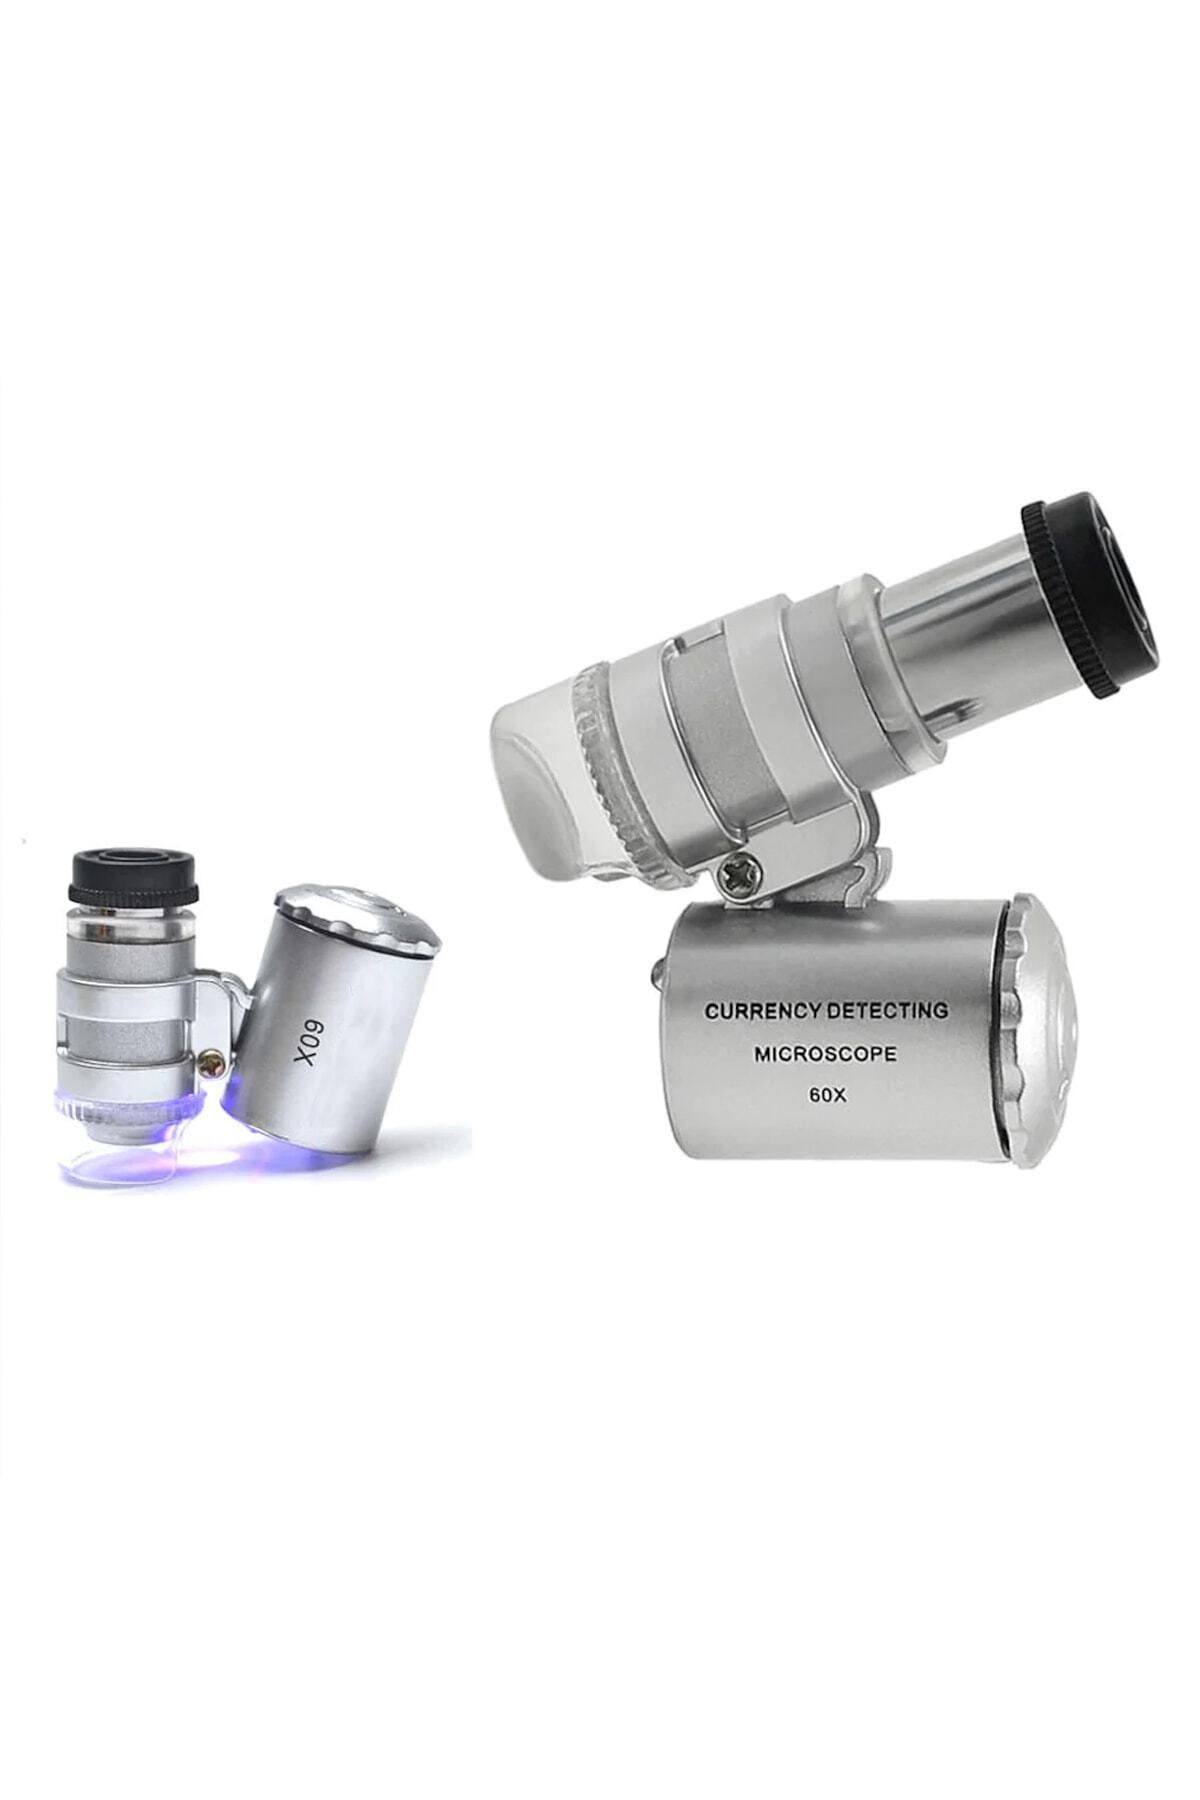 Microcase 60x Mini Cep Mikroskopu Uv Ledli Cam Büyüteç Çantalı